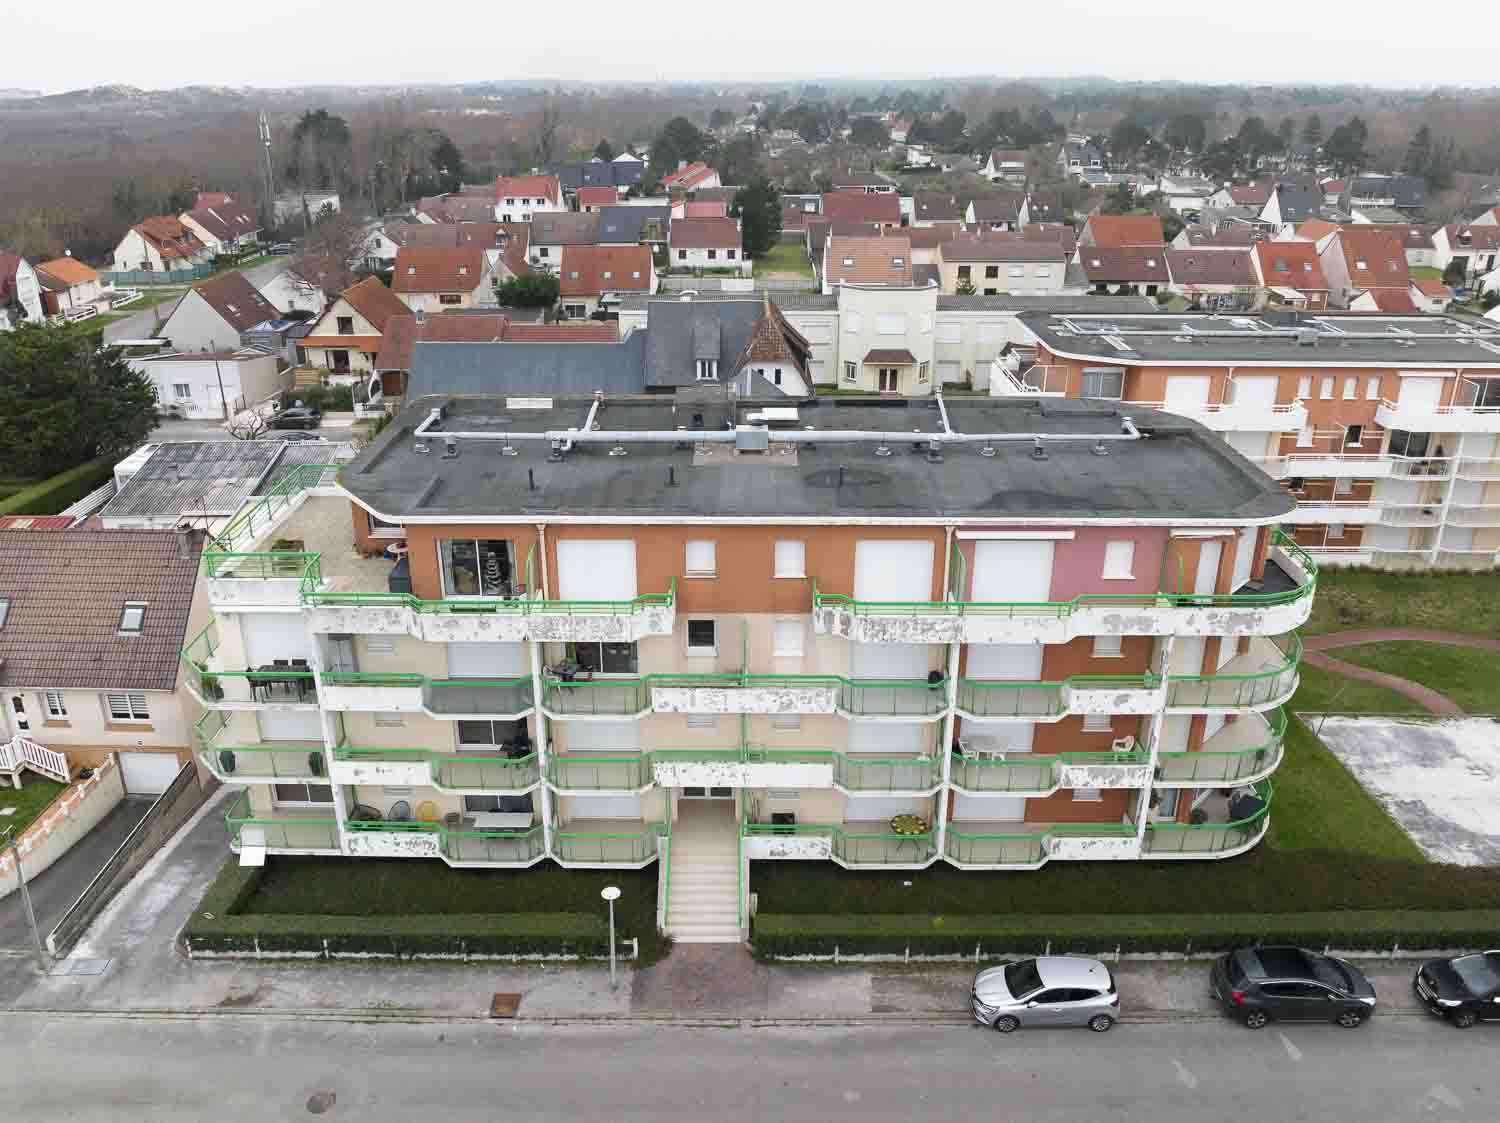 suivi-chantier-renovation-de-facades-par-drone-a-merlimont-pres-de-montreuil-sur-mer